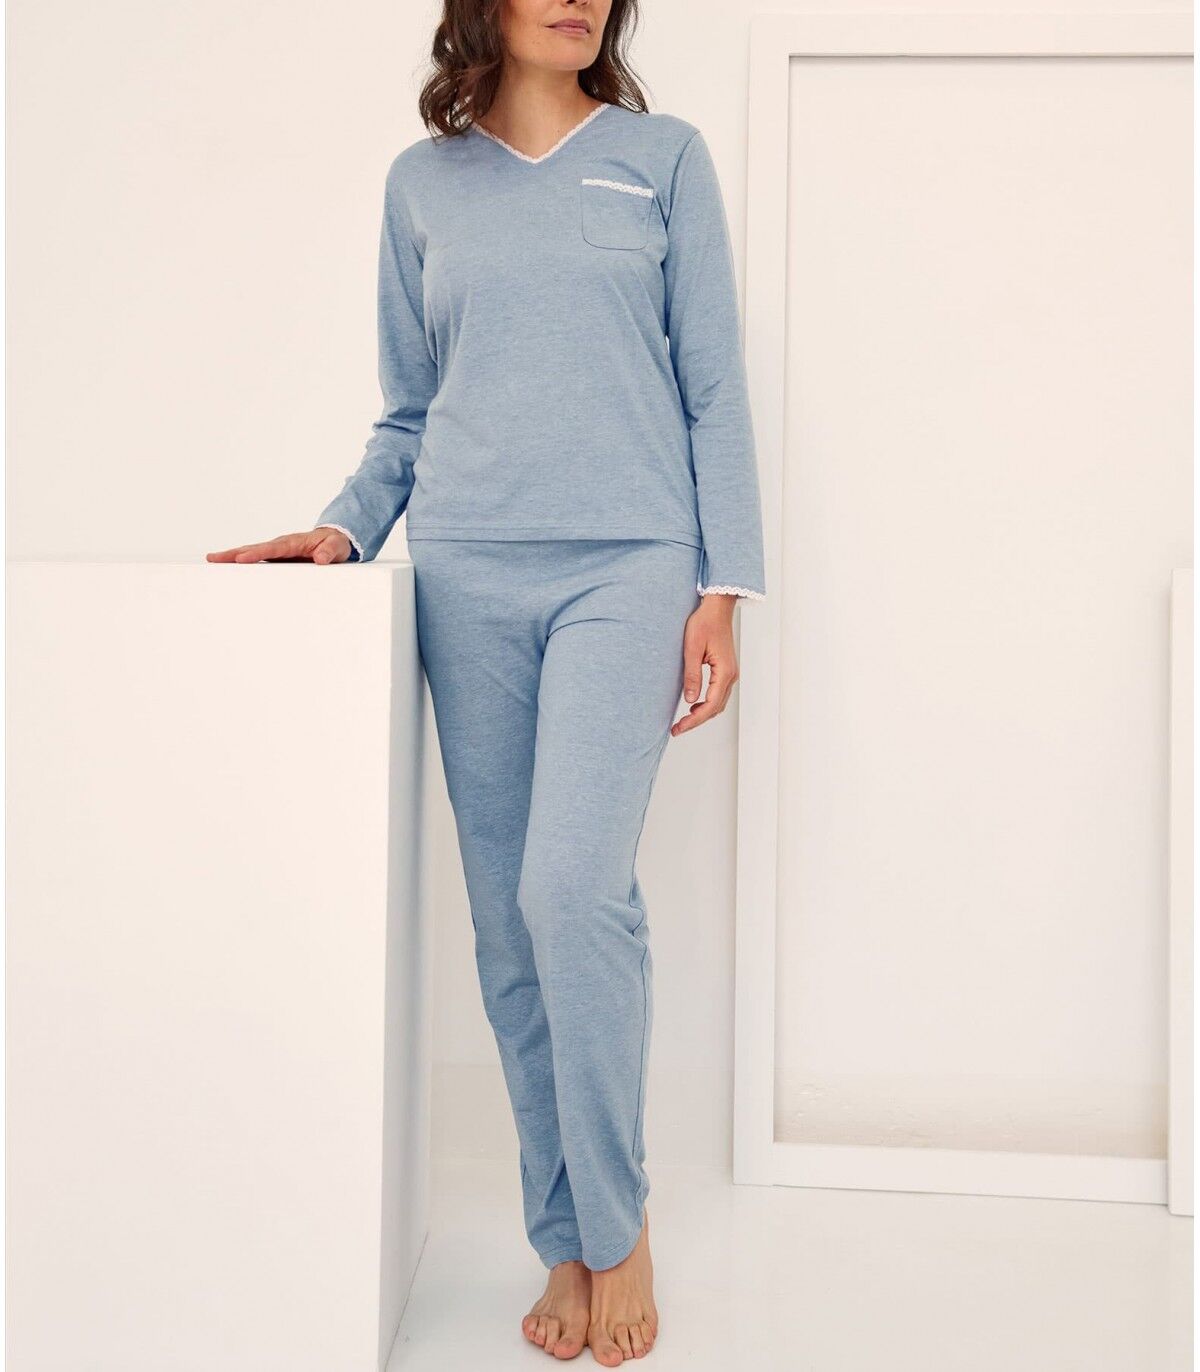 Pijama MARIE CLAIRE Mujer 97399 48 Azul